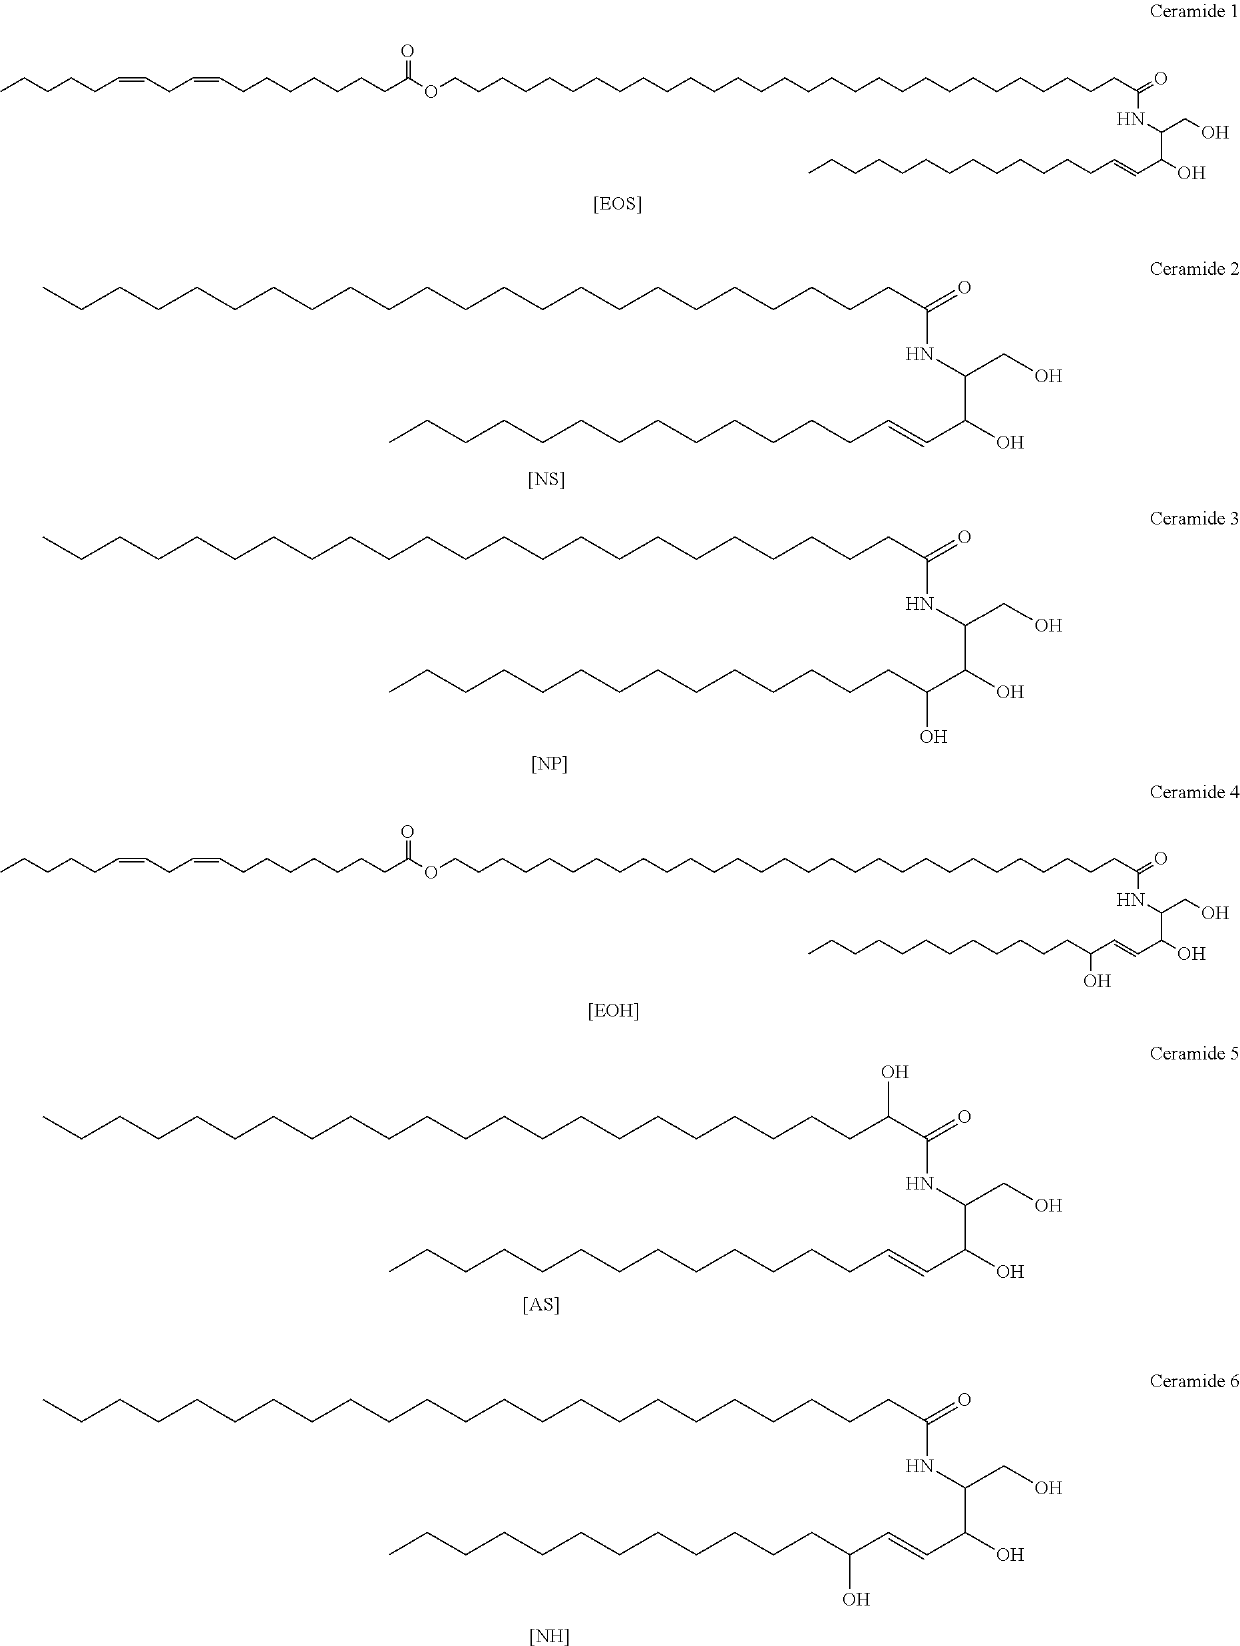 Bi-phase micellar liquid product comprising ceramides